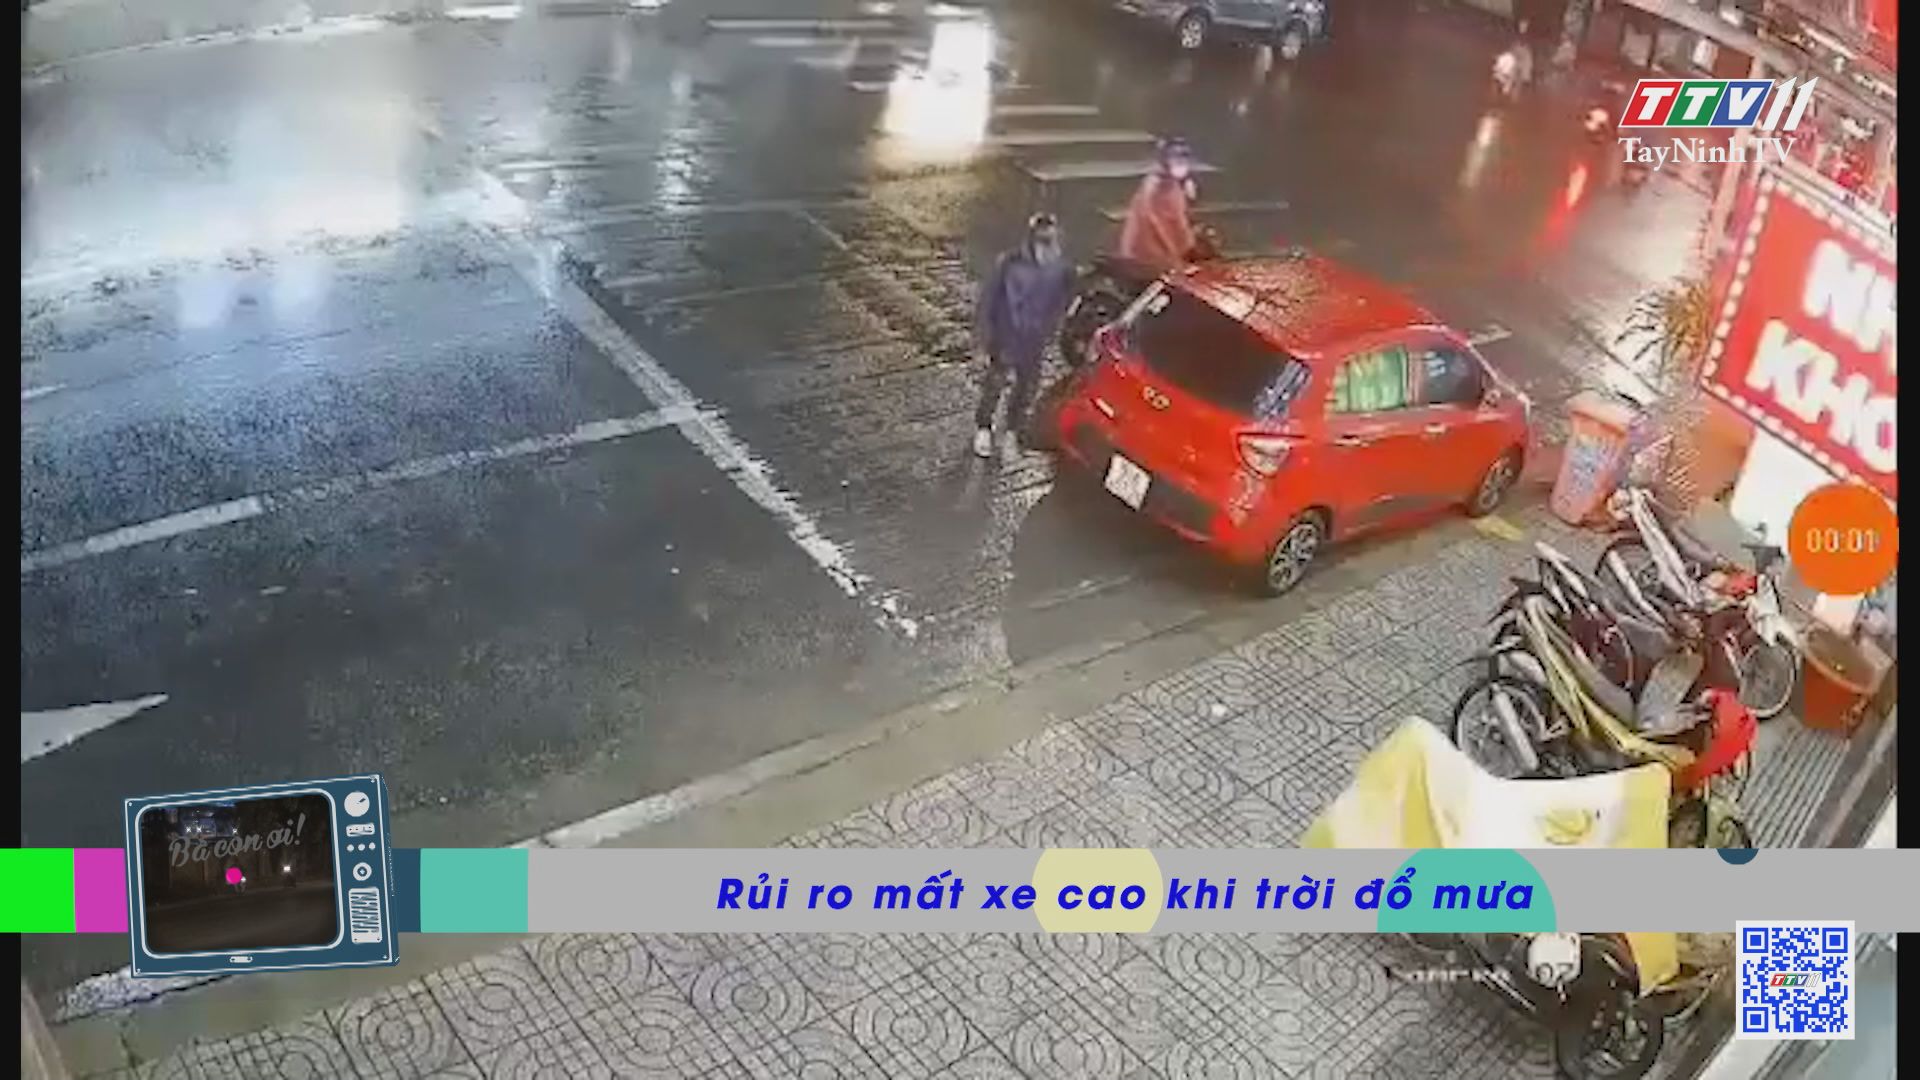 Rủi ro mất xe cao khi trời đổ mưa | Bà con ơi cảnh giác | TayNinhTVE